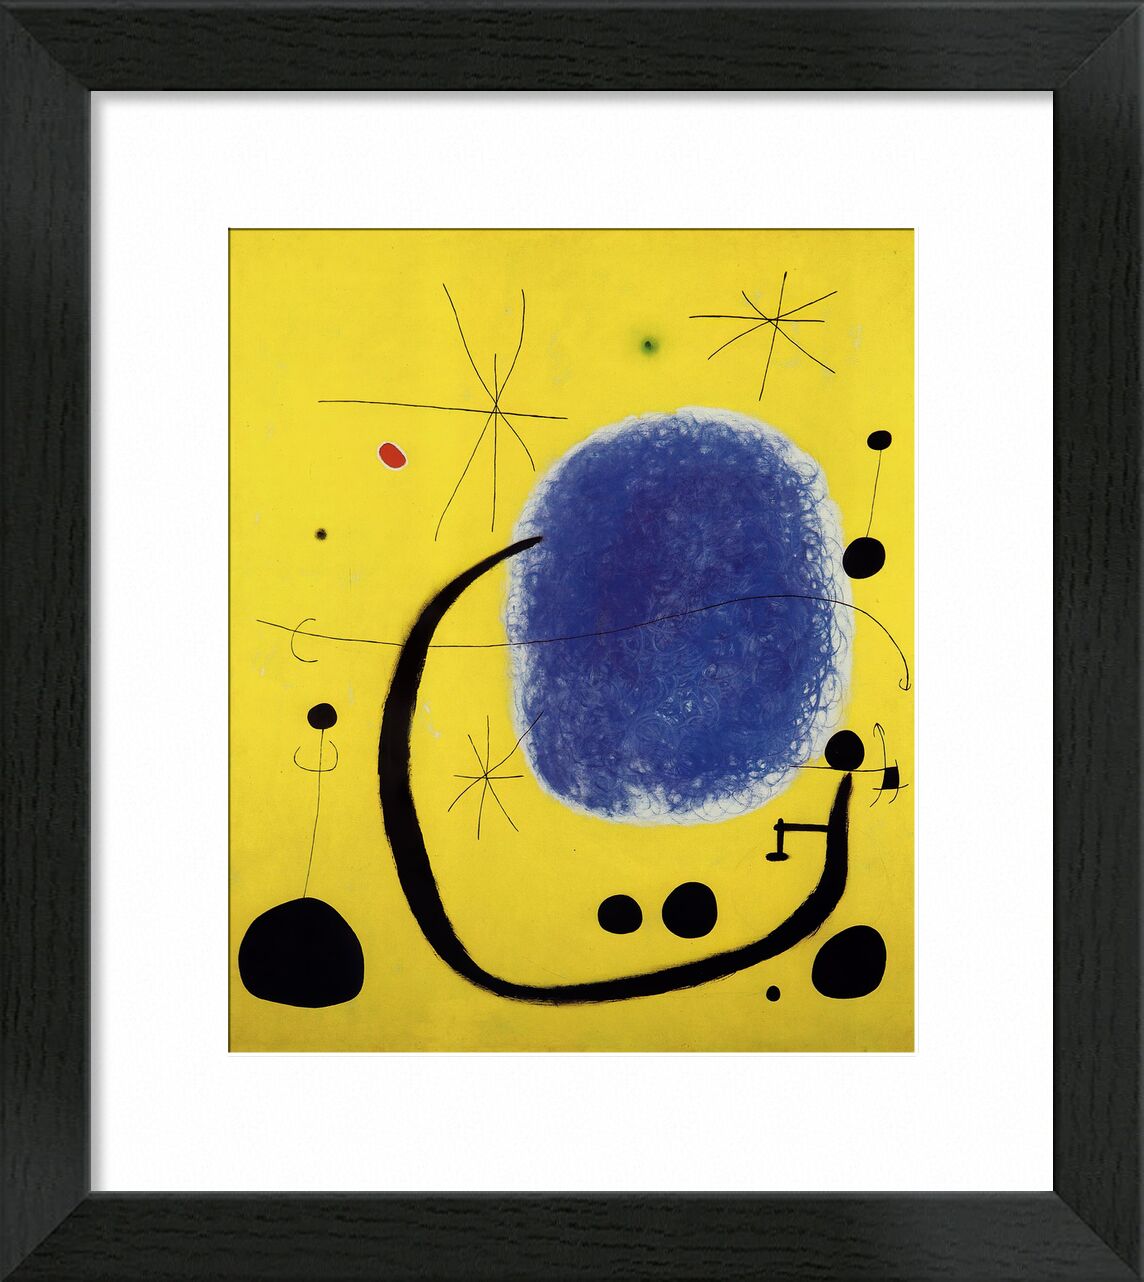 The Gold of the Azure, 1967 von Bildende Kunst, Prodi Art, Joan Miró, Gold, blau, Malerei, abstrakt, gelb, Sonne